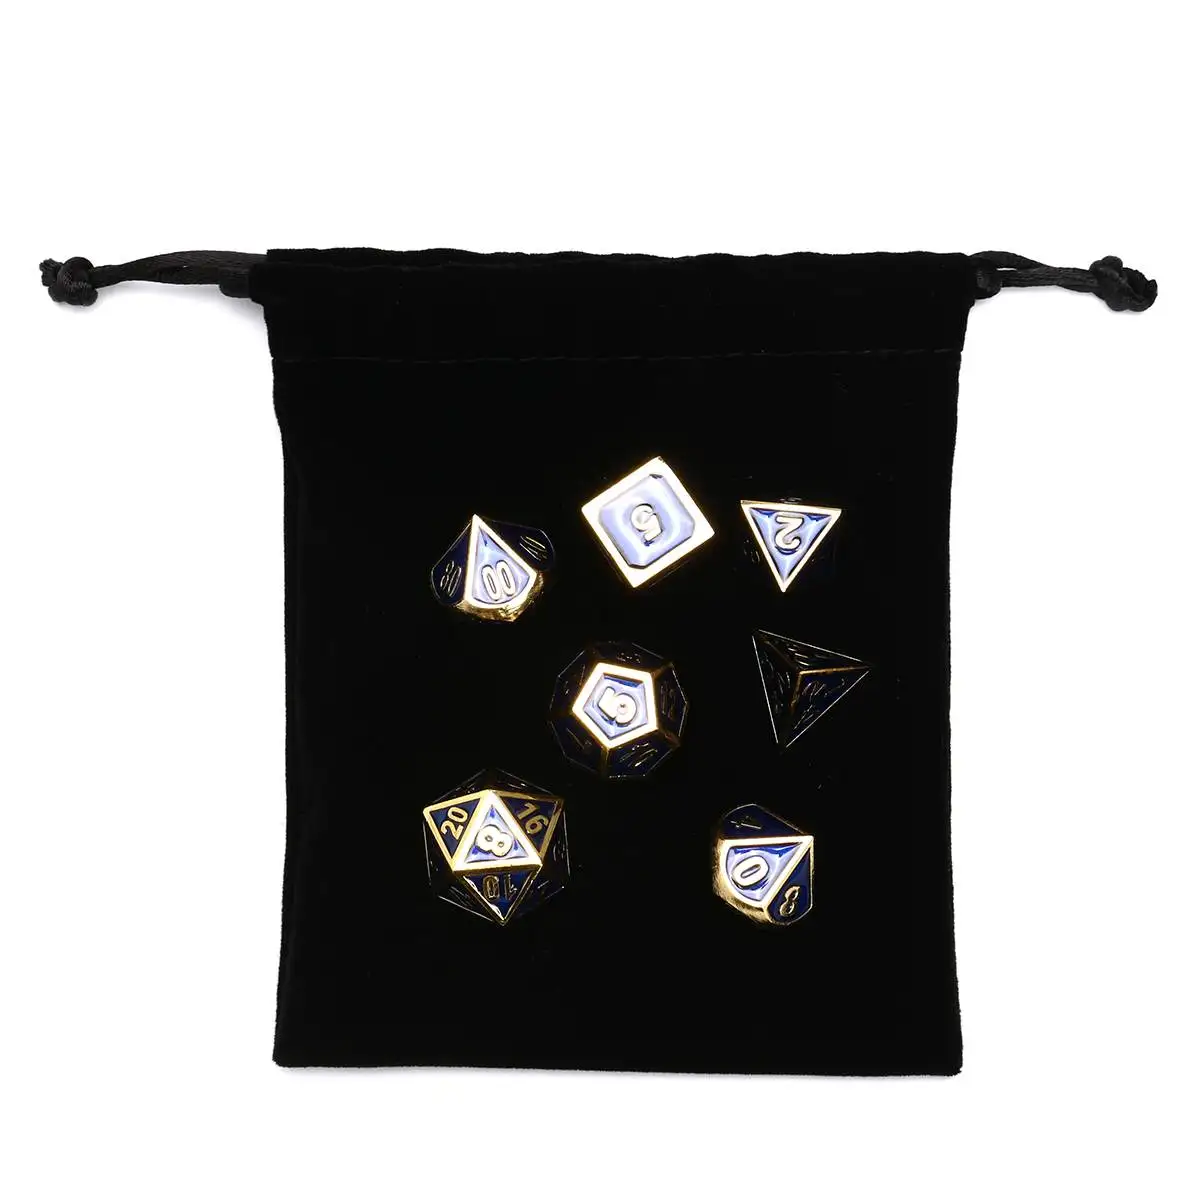 7 штук, античные золотые Голубая Эмаль Металлический многогранные кости комплект гаджетов для трпг кубик для настольной игры из D4 D6 D8 D10 D12 D20 с тряпичной сумкой в комплекте